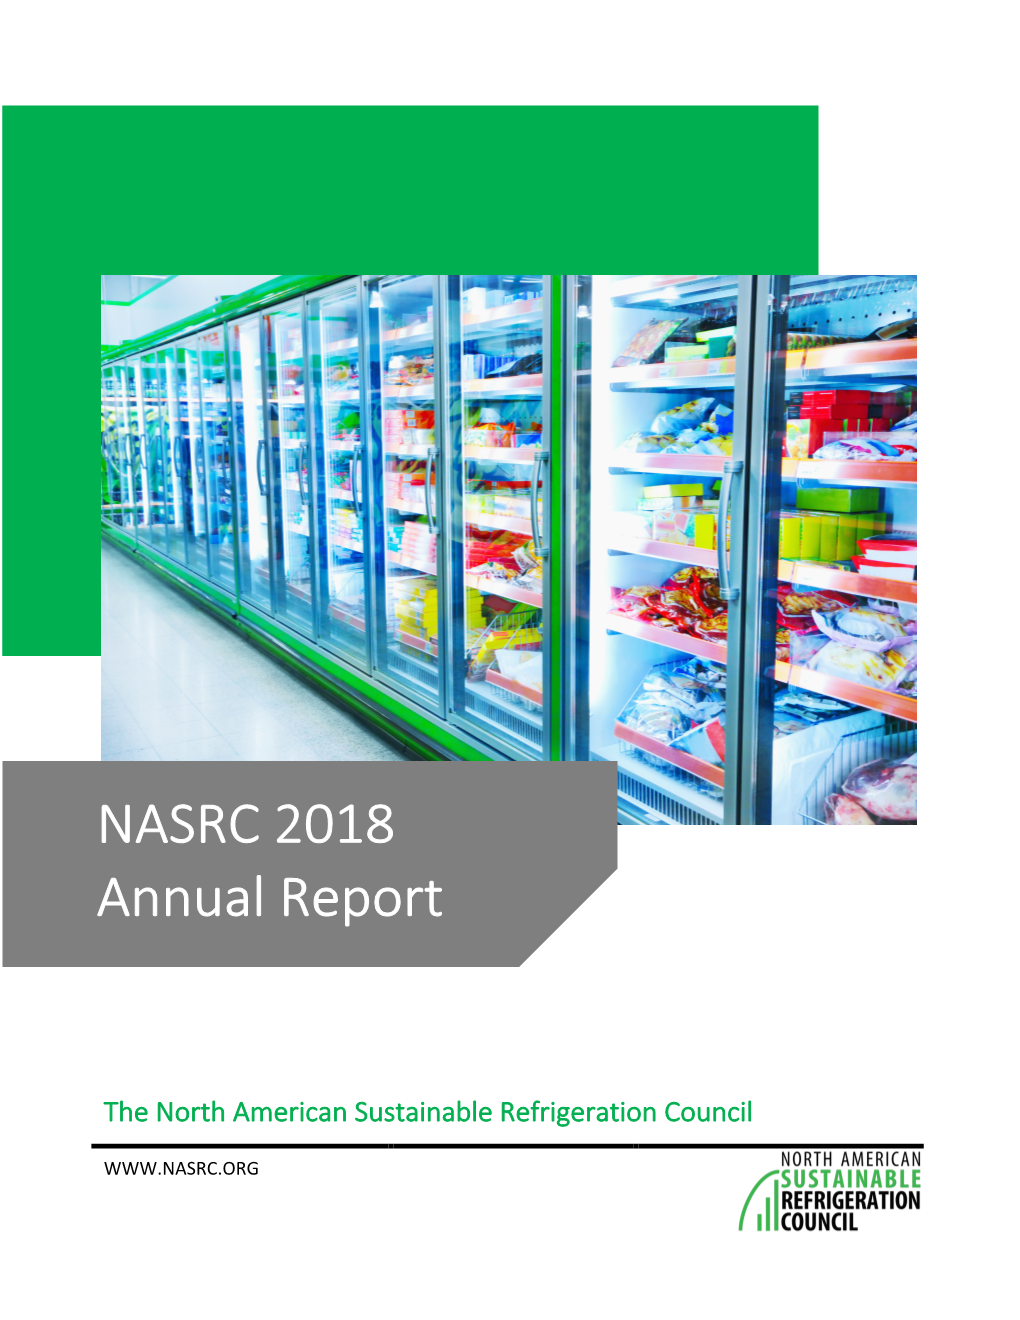 NASRC 2018 Annual Report